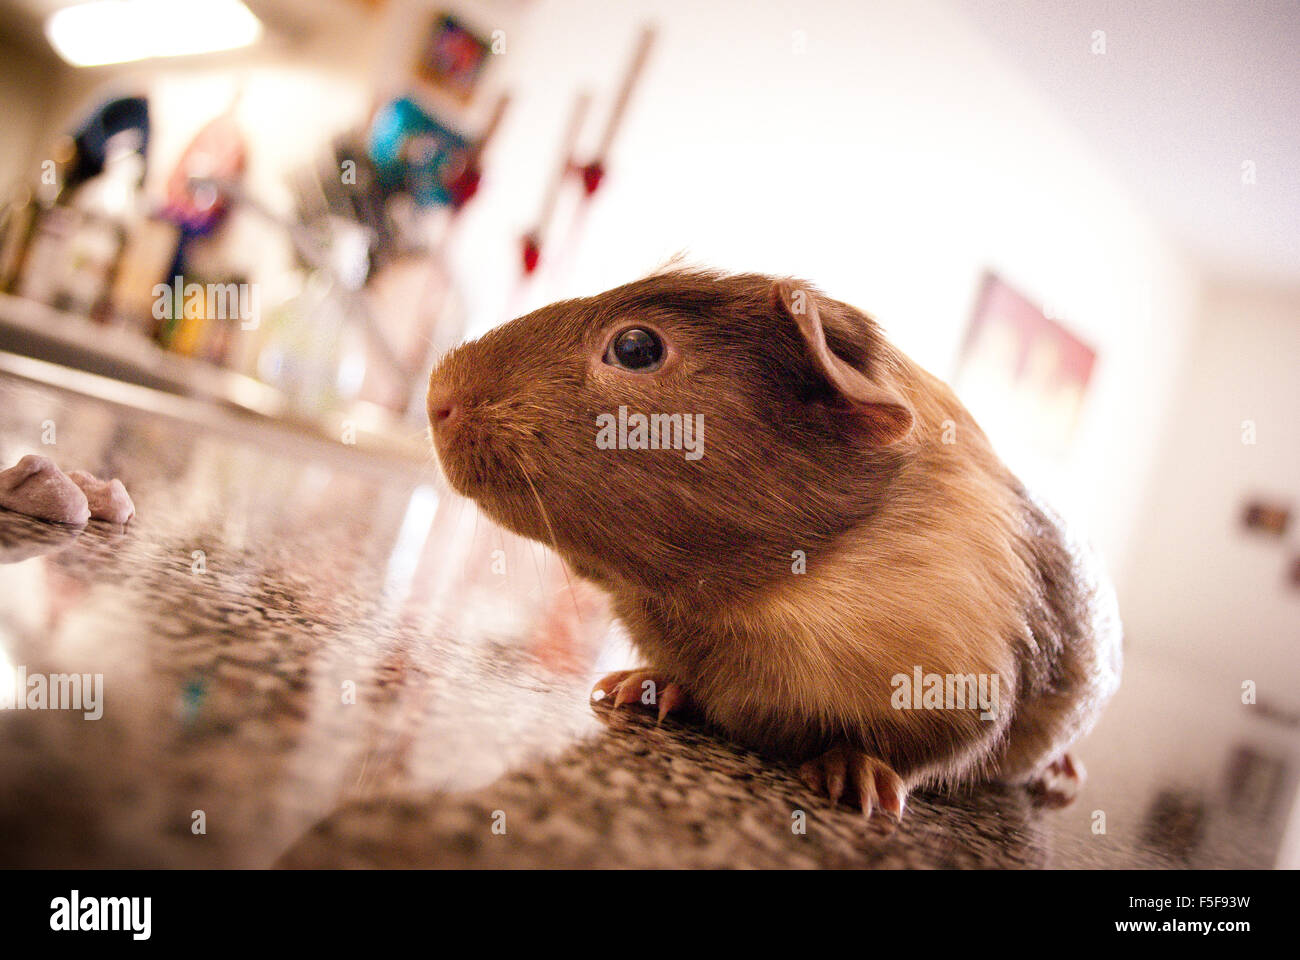 guinea pig close up. Stock Photo